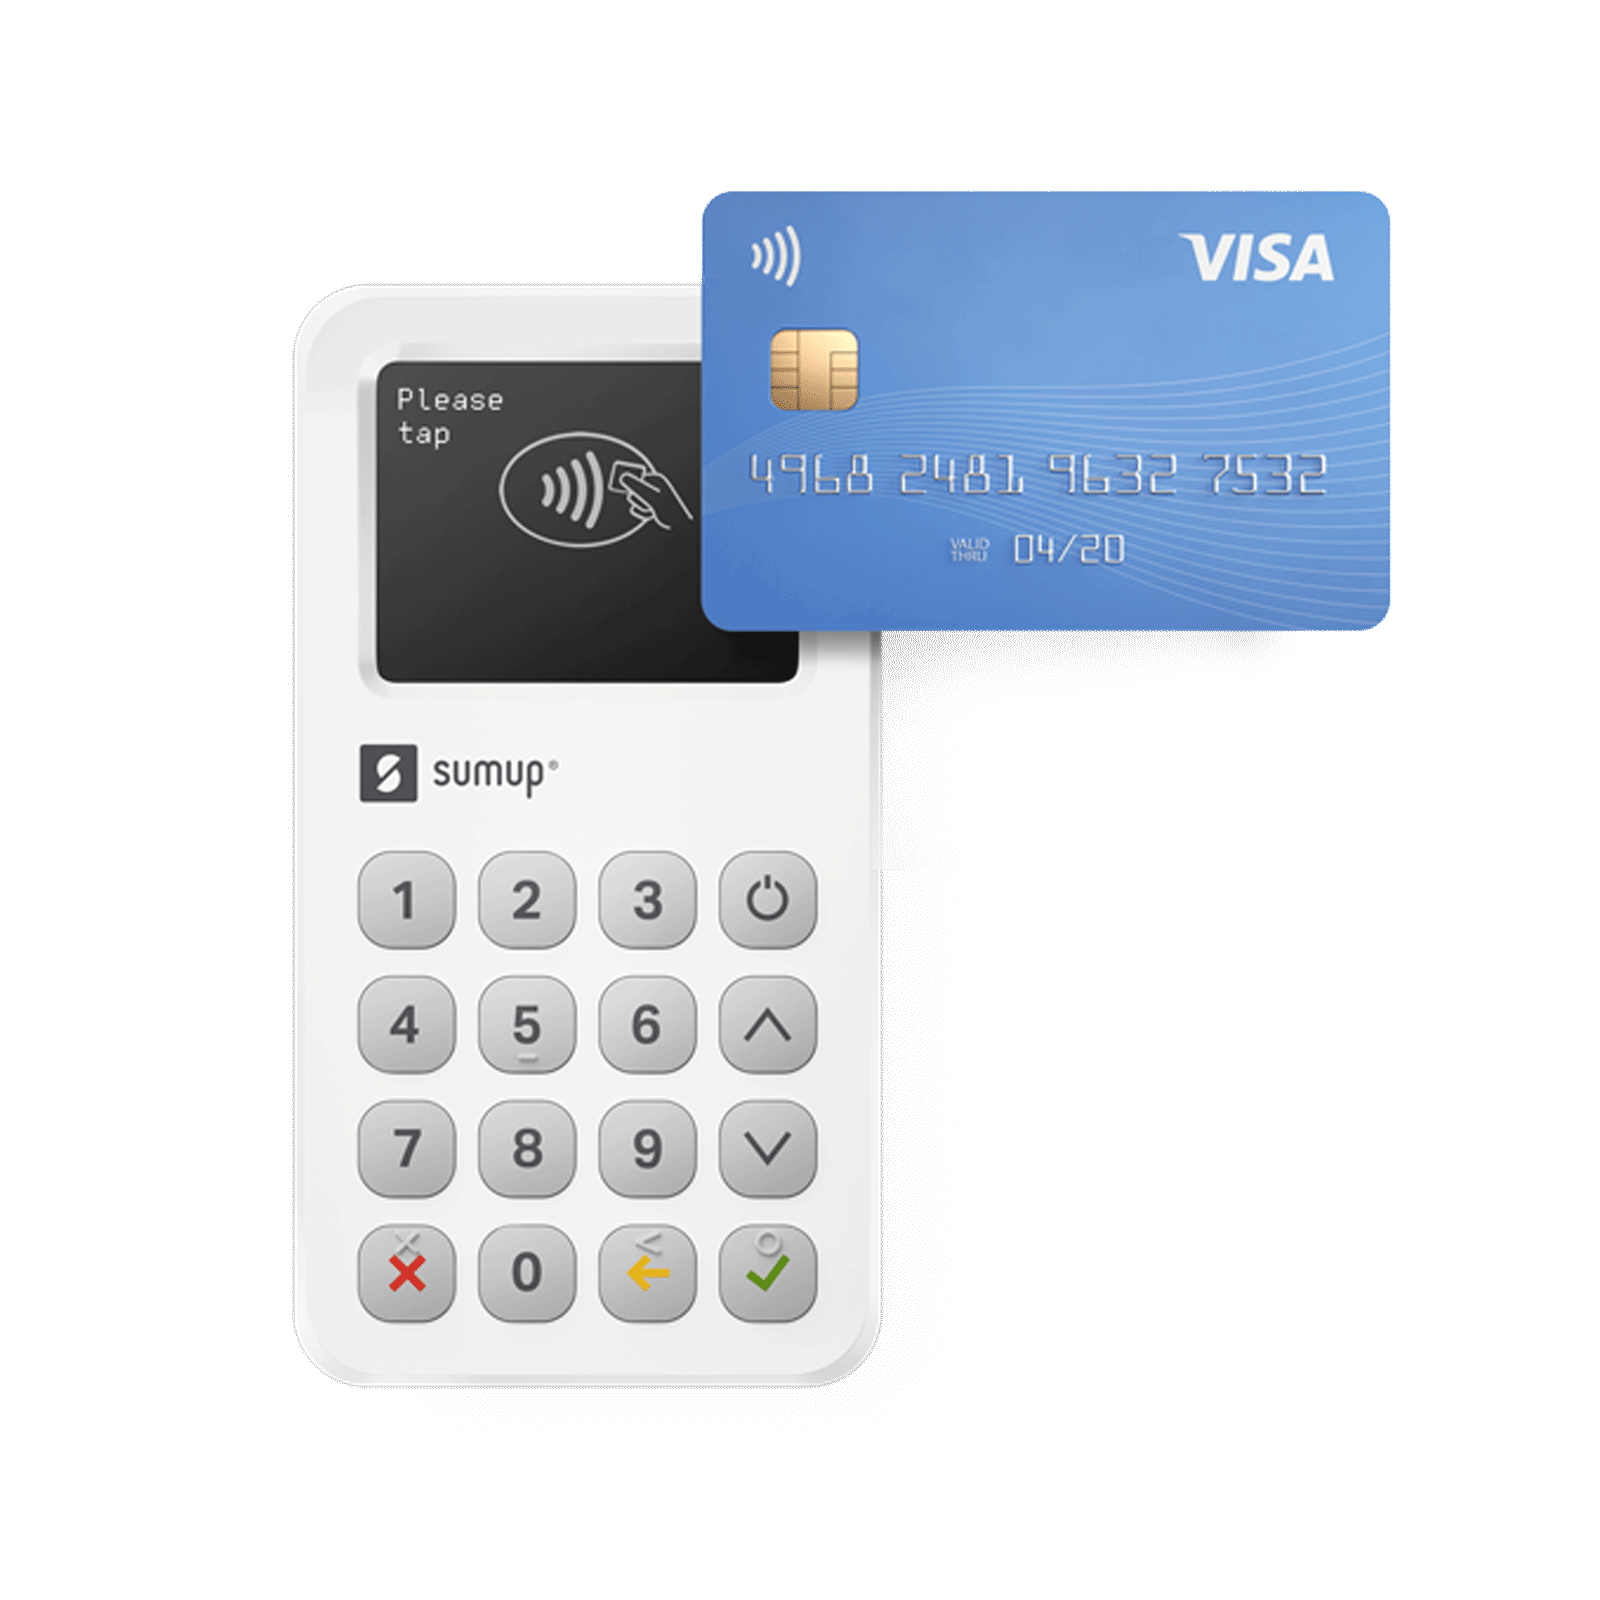 Kartenzahlung wird mit einem SumUp Kartenterminal angenommen und in der Debitoor App erfasst